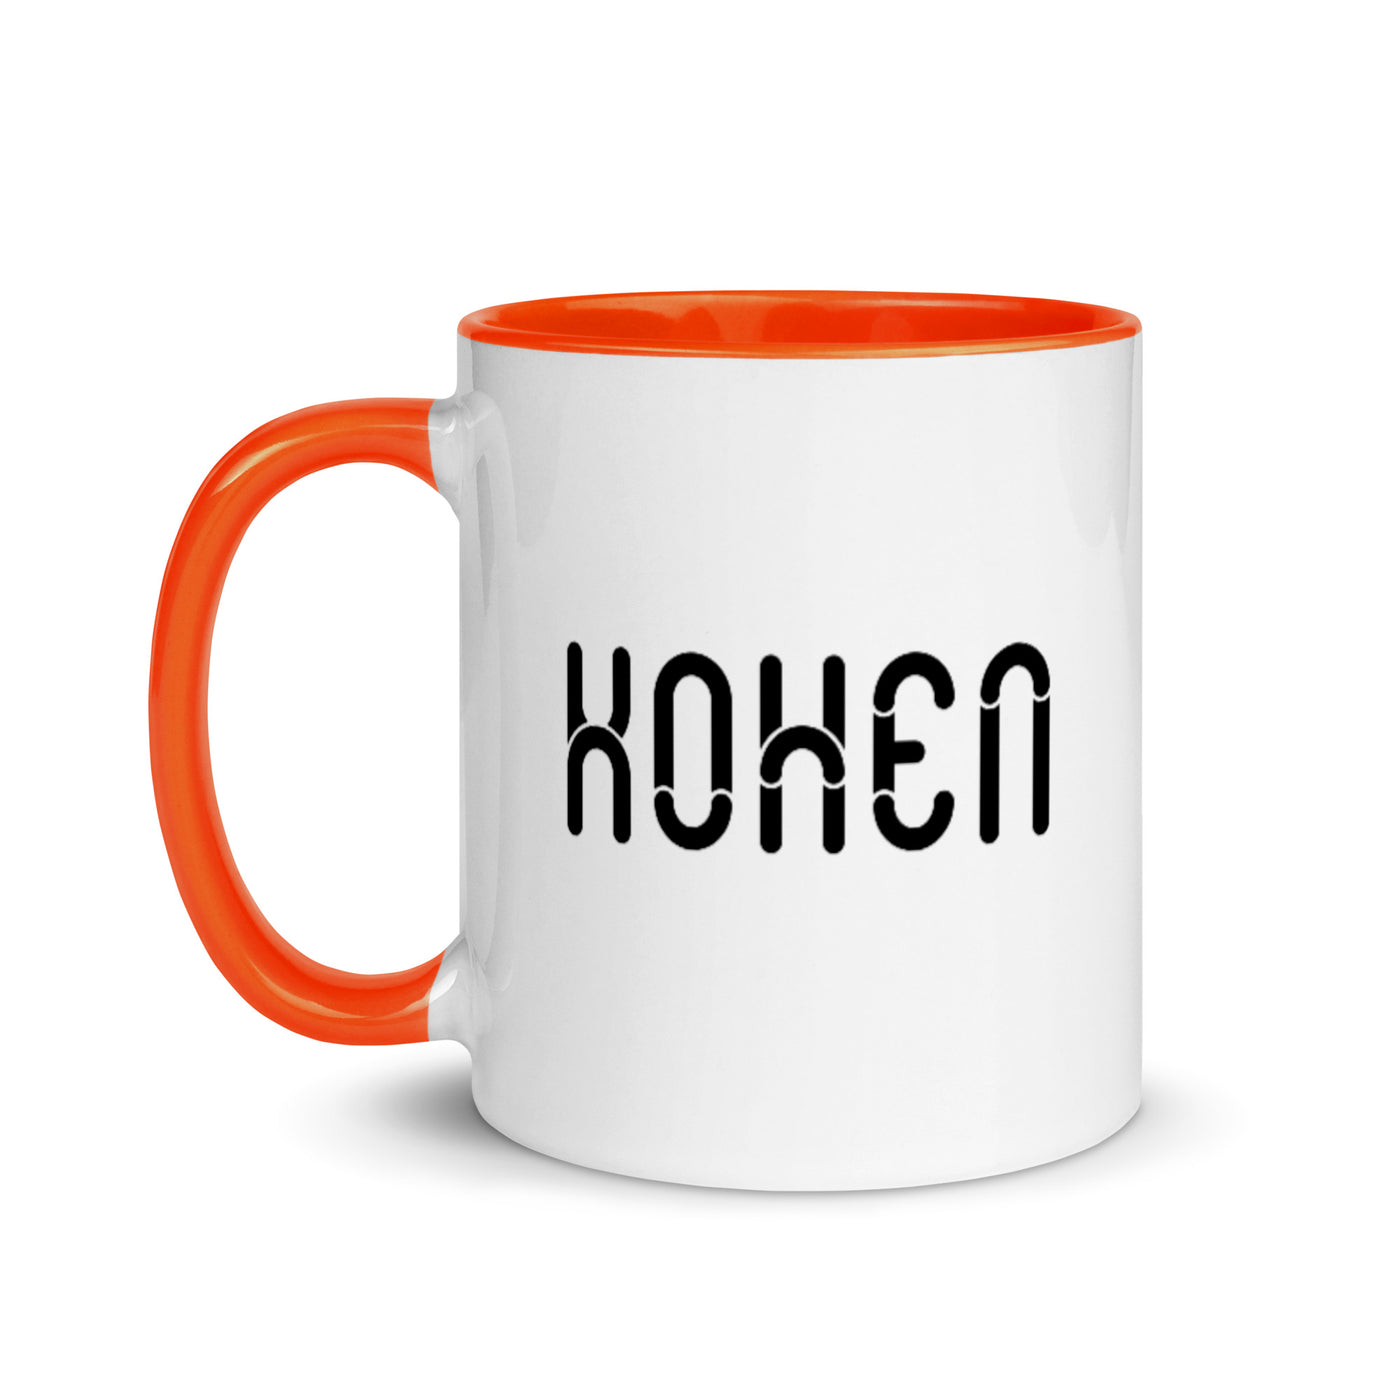 KOHEN - Mug with Color Inside